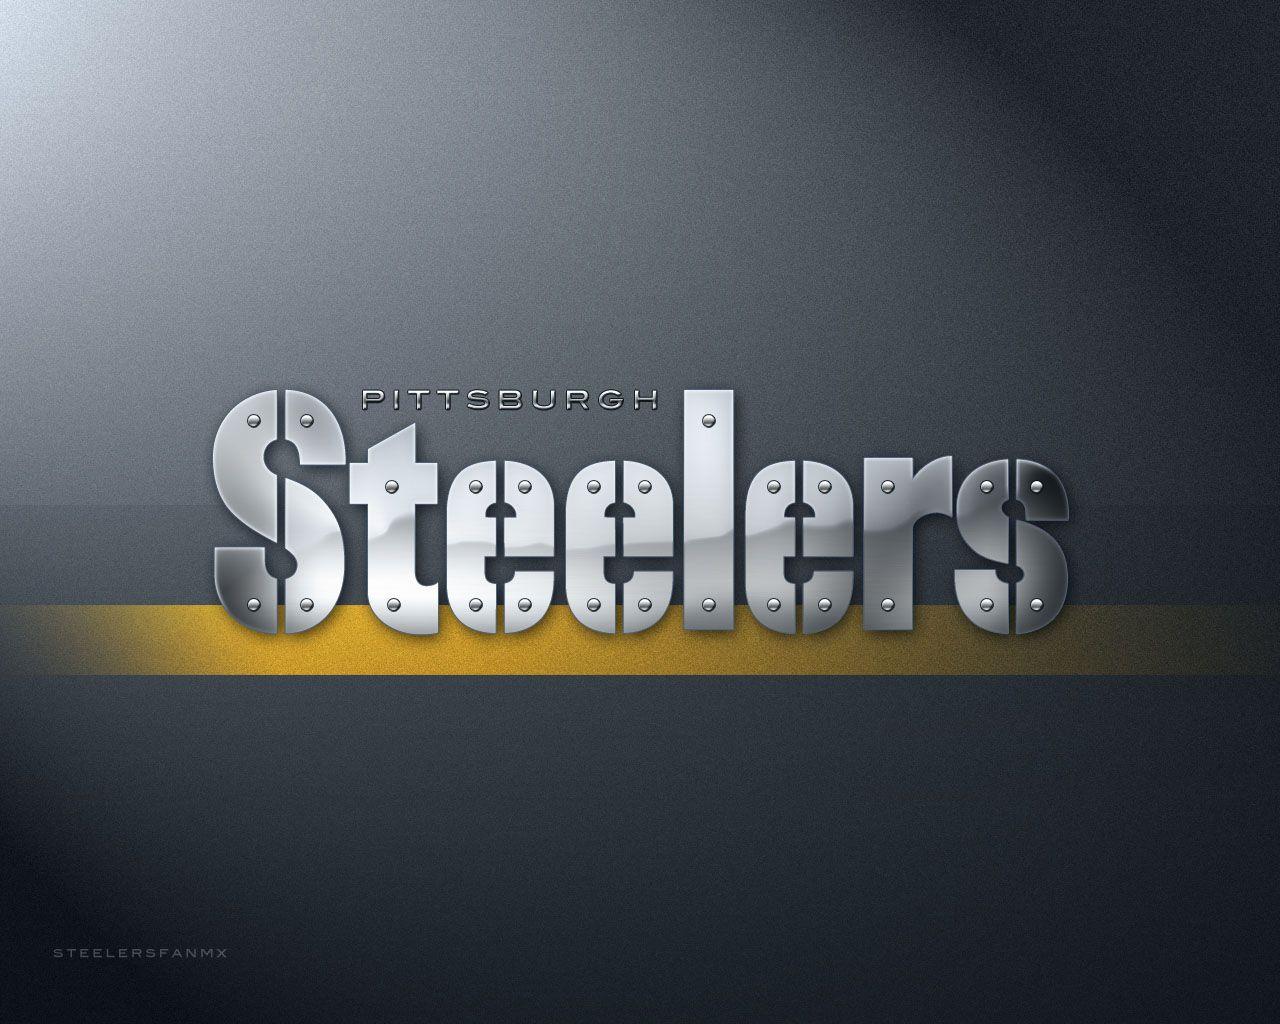 Pittsburgh Steelers wallpaper HD image. Pittsburgh Steelers